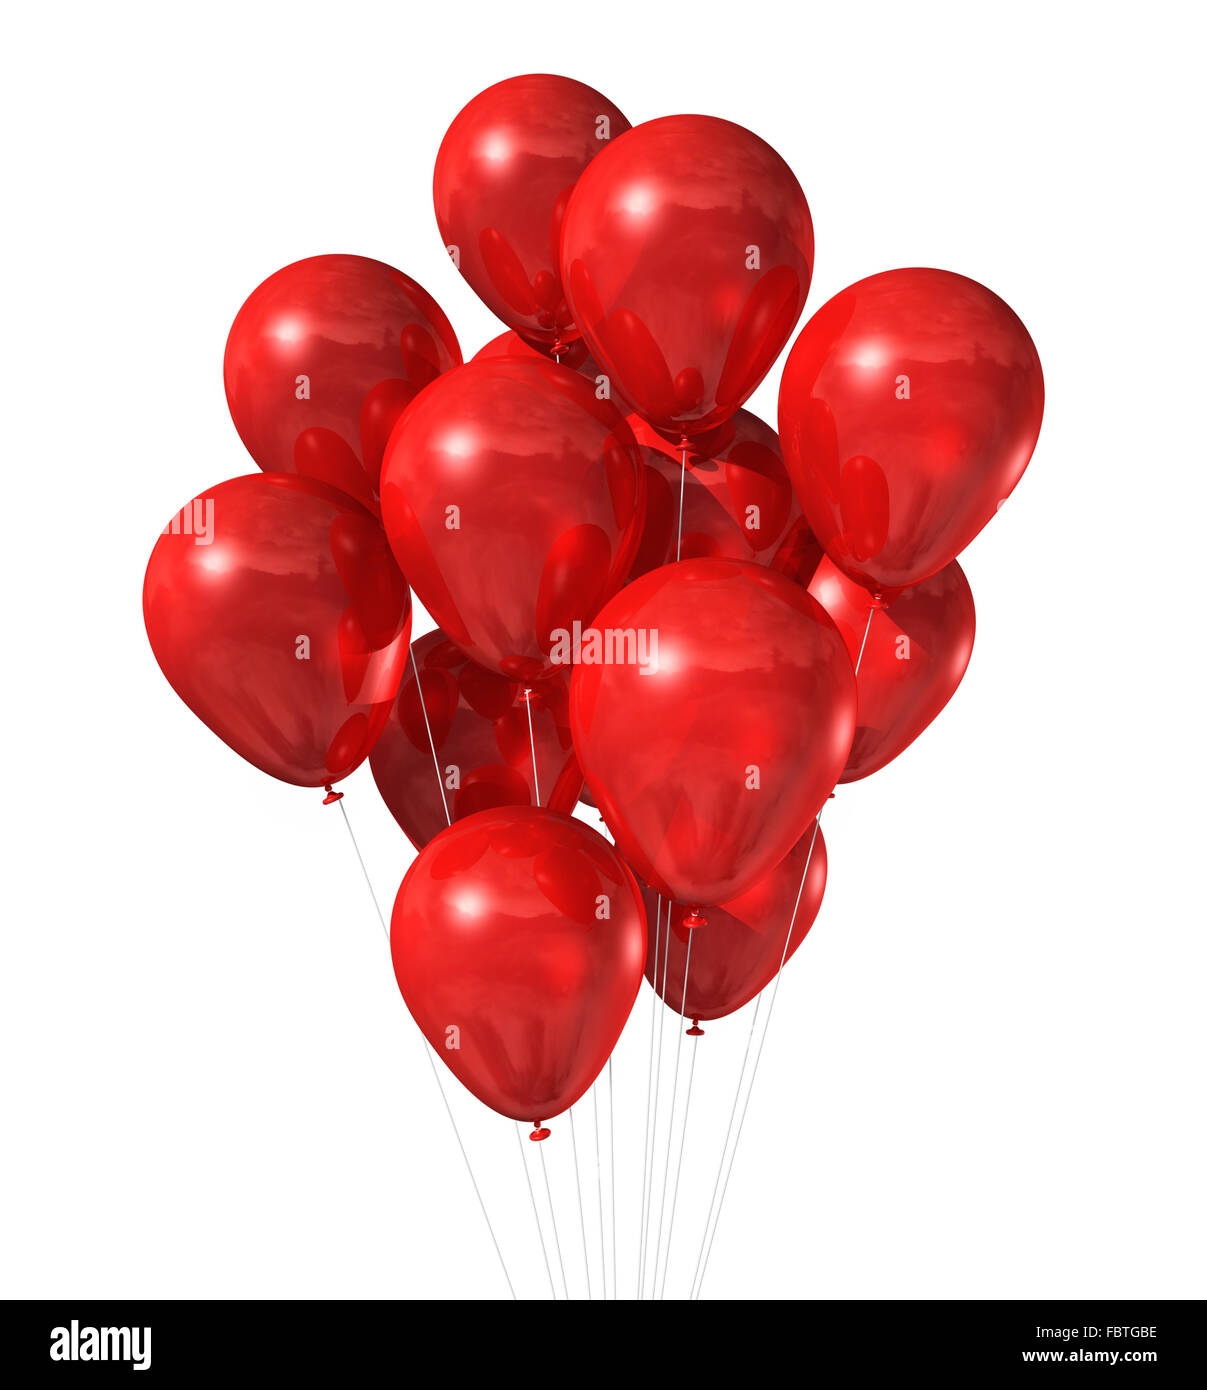 Palloncini rossi immagini e fotografie stock ad alta risoluzione - Alamy